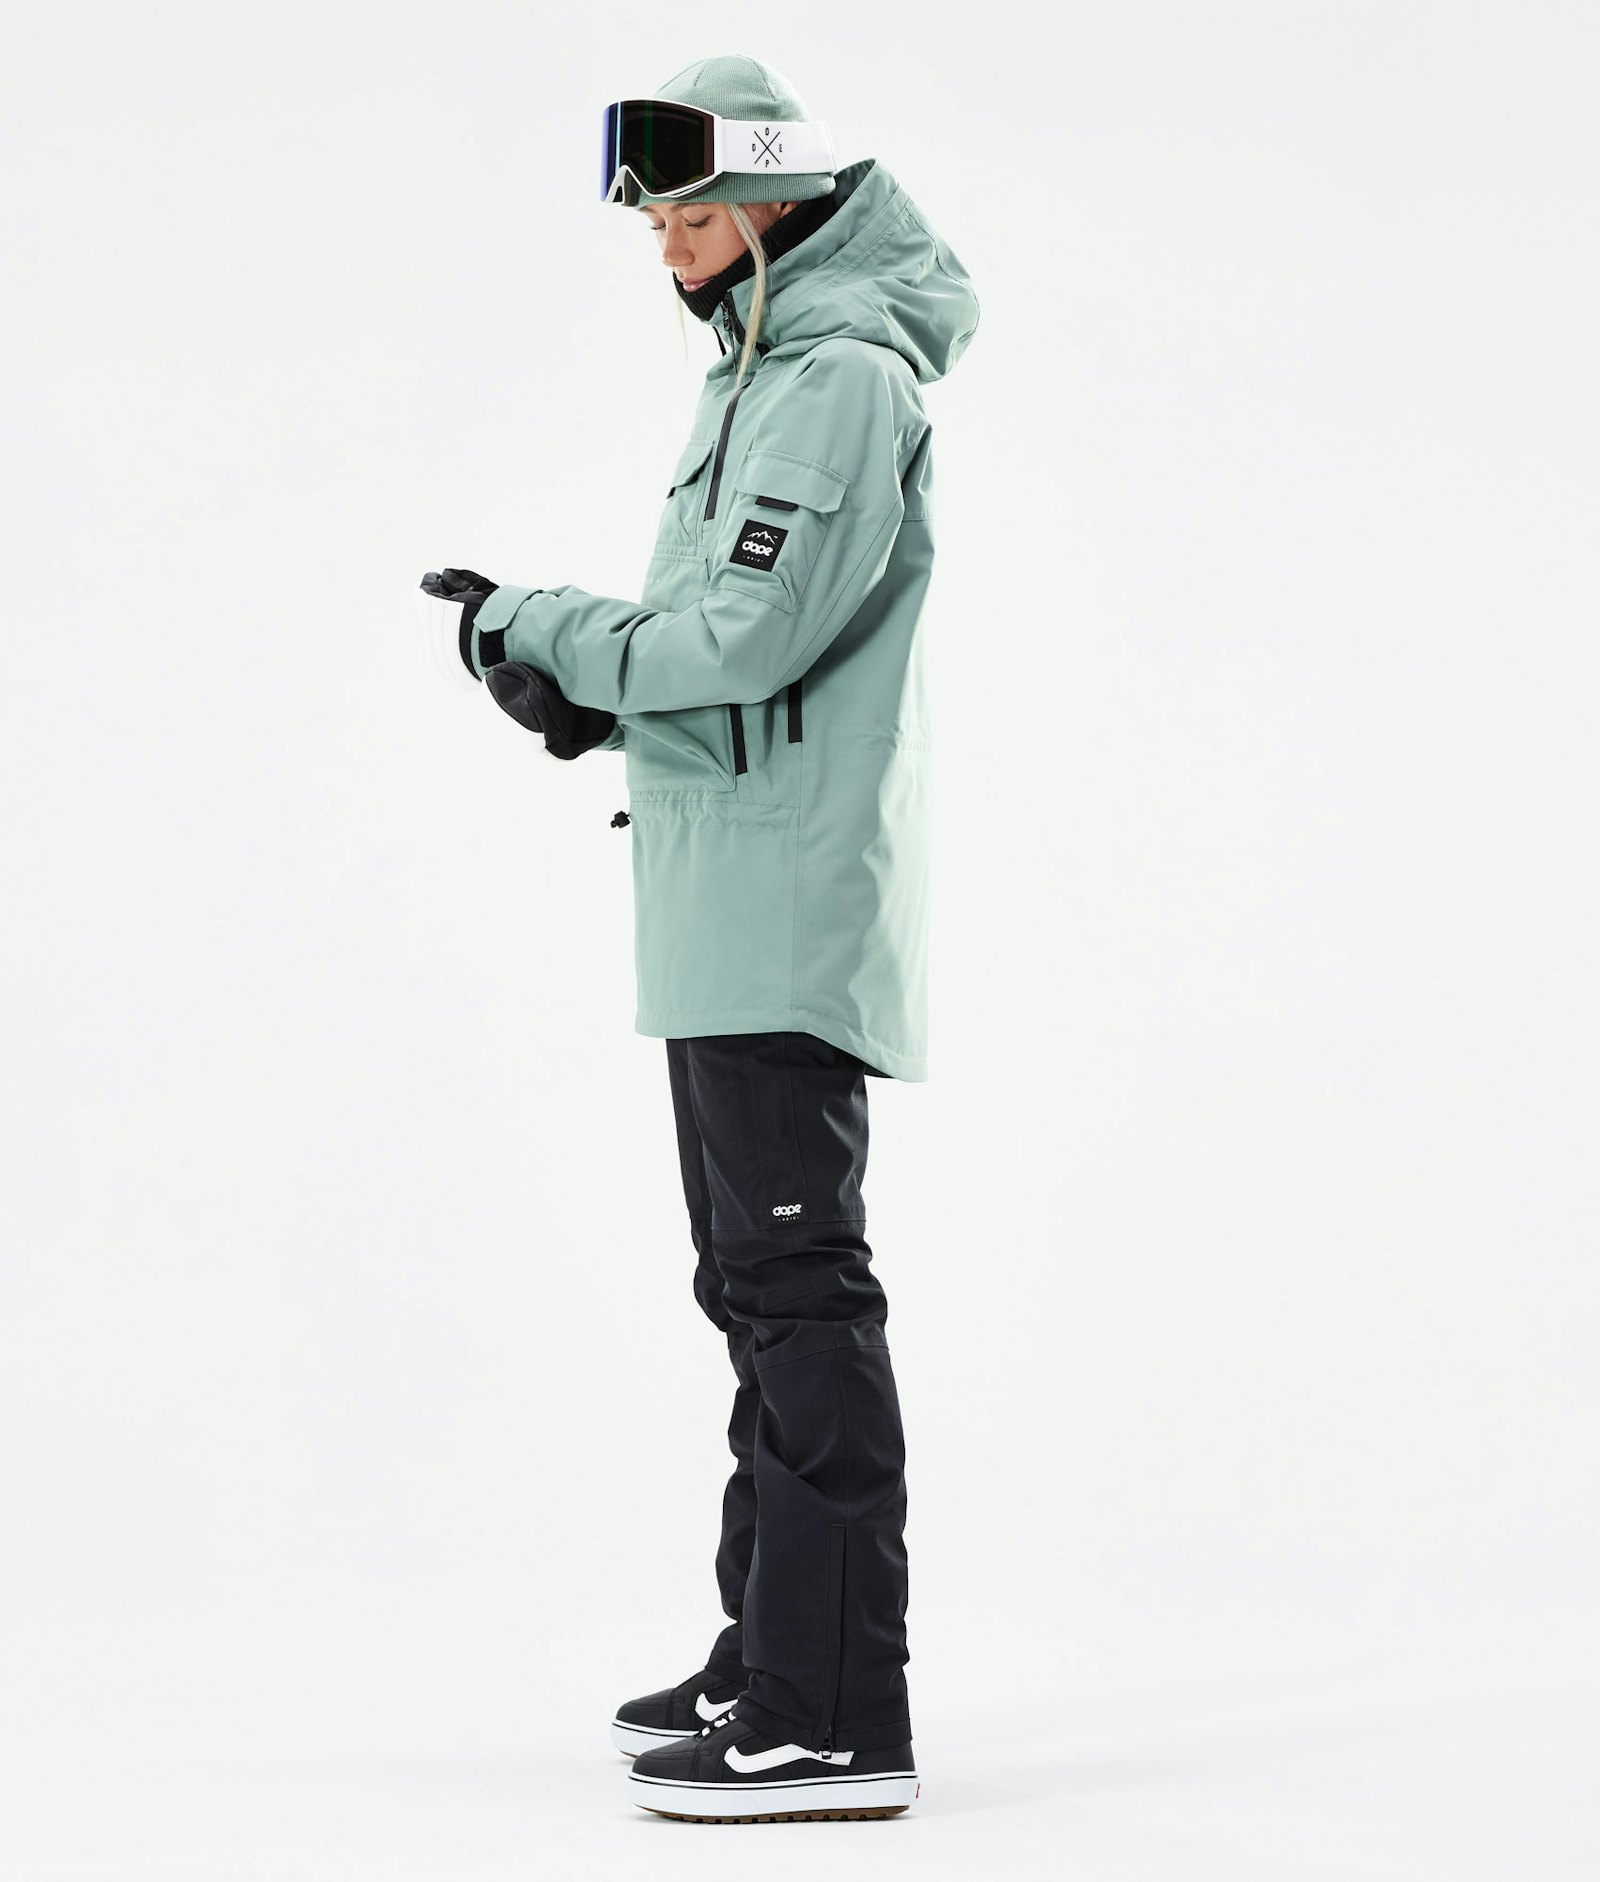 Akin W 2021 Snowboard Jacket Women Faded Green Renewed